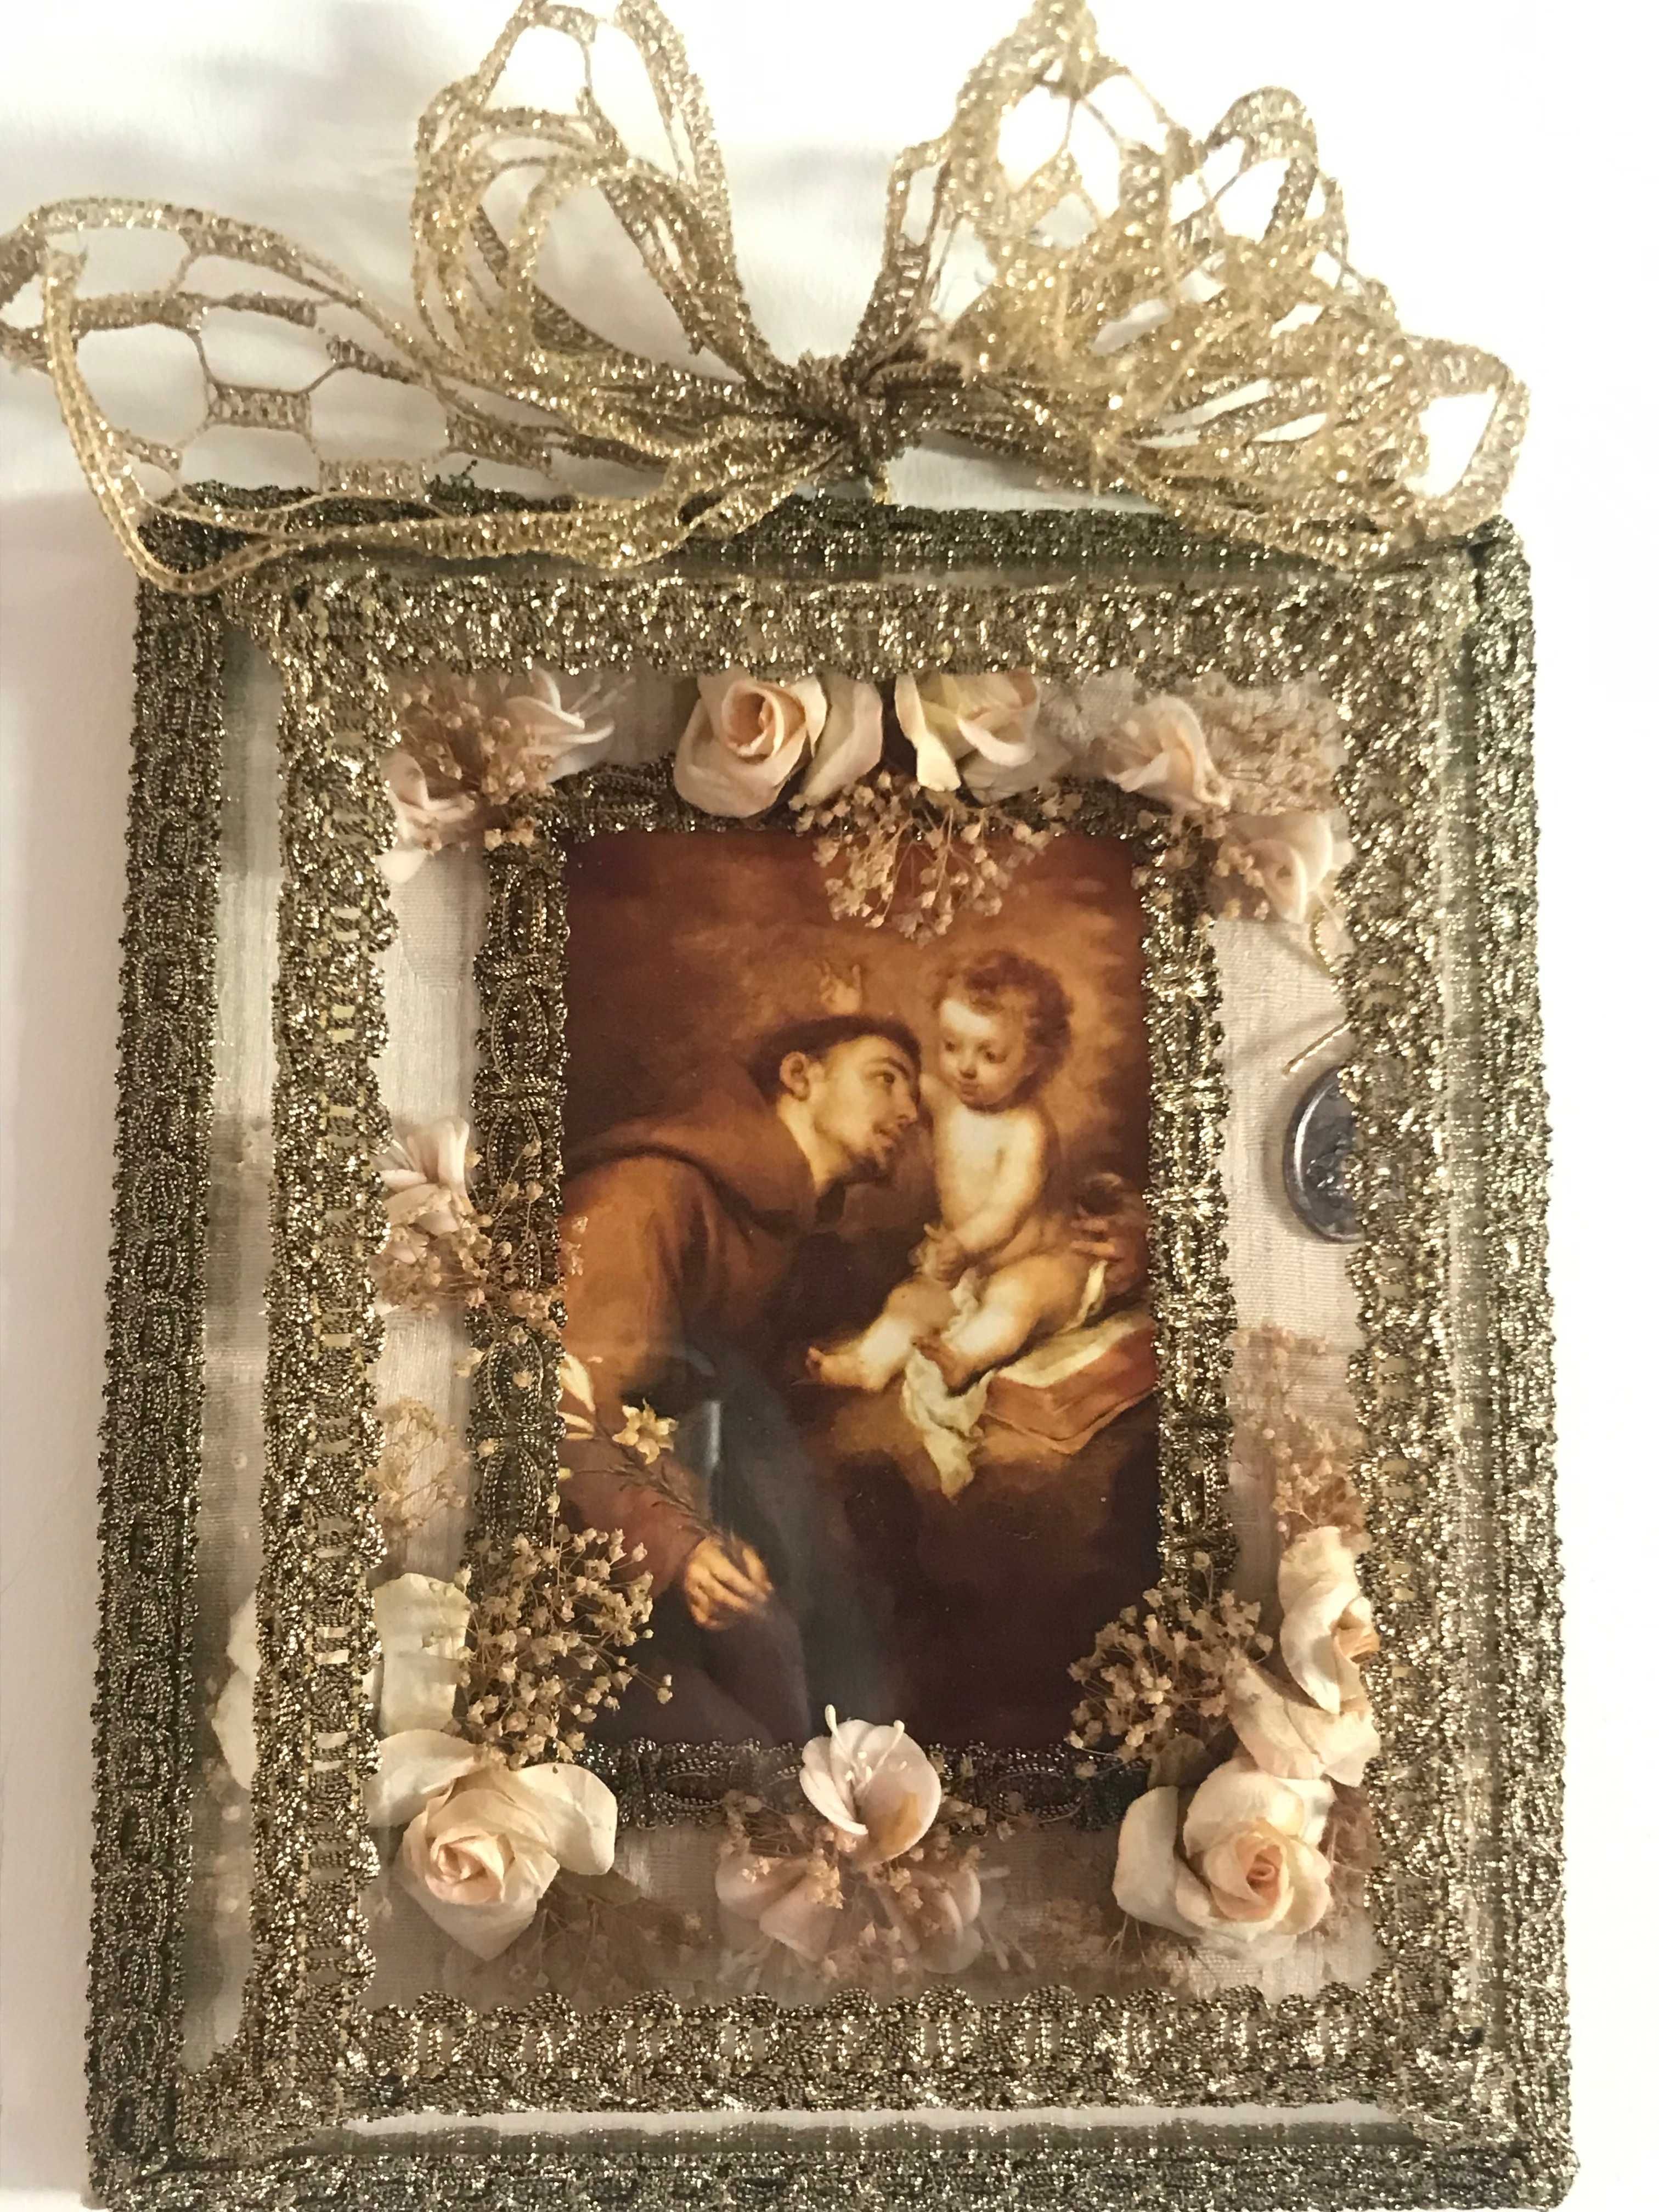 Santo Antonio em caixinha de vidro decorada.